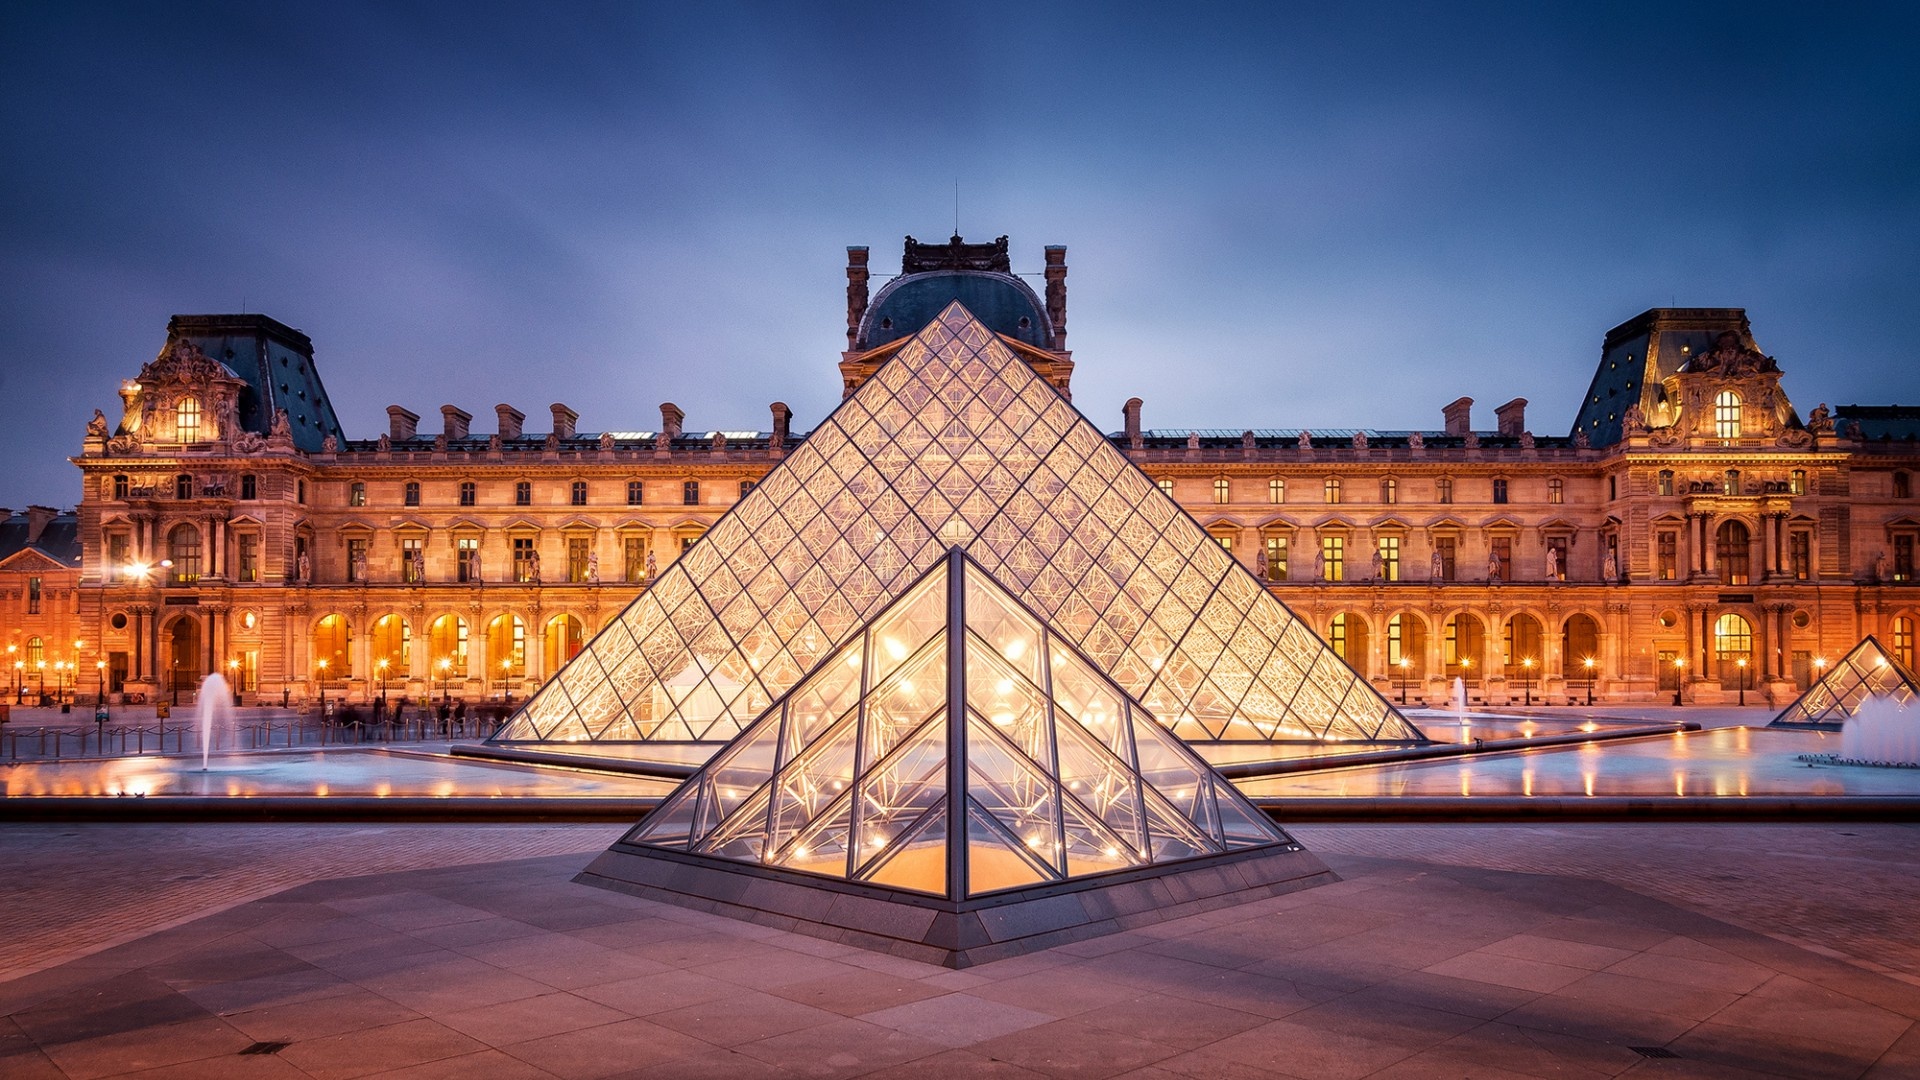 موزه لوور در شهر پاریس از جاذبه های گردشگری فرانسه